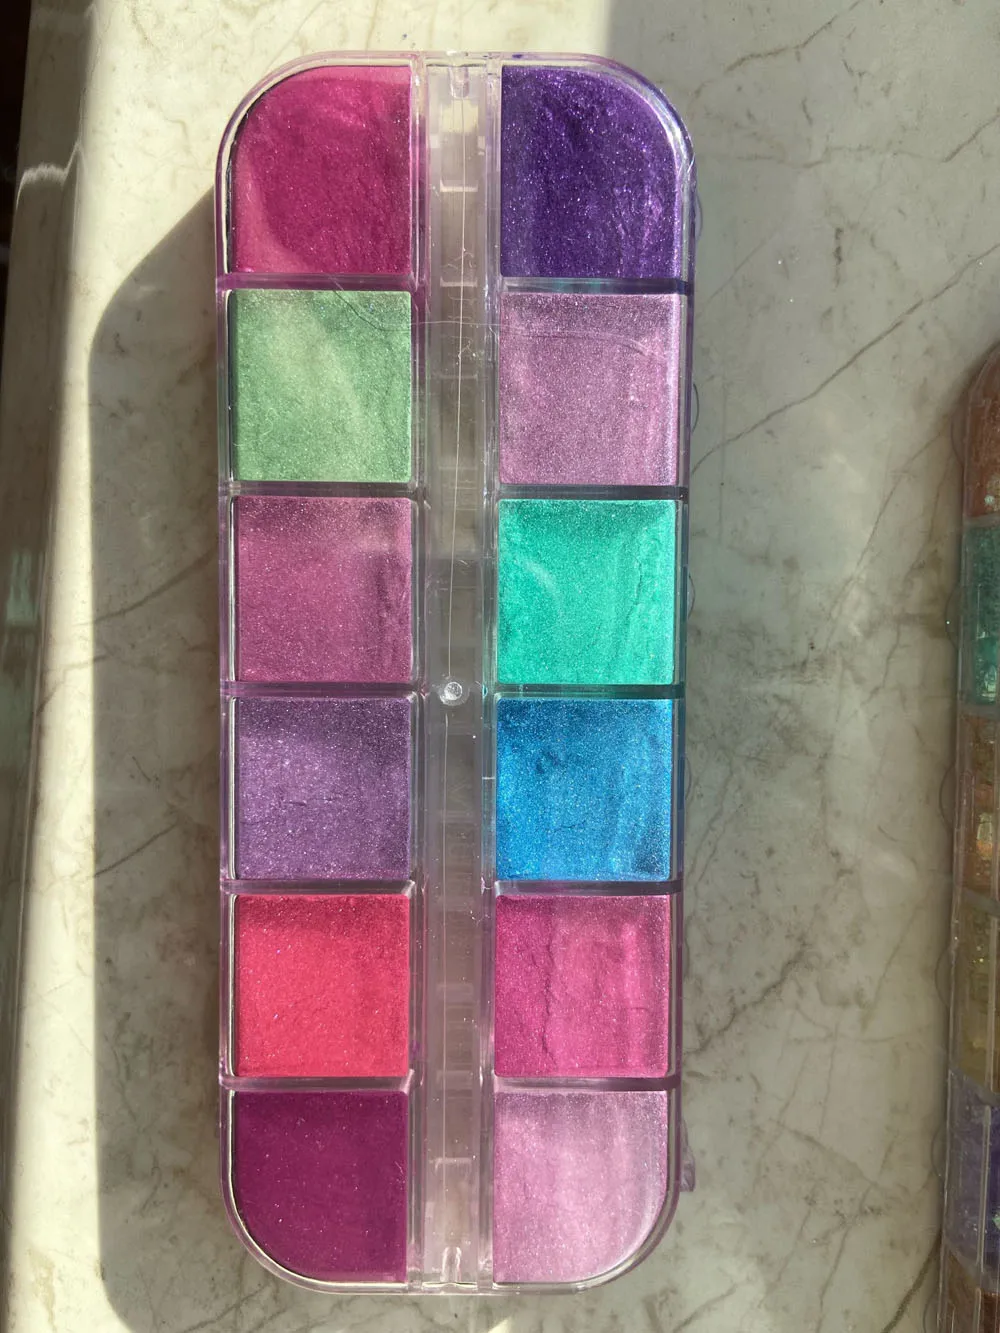 12Grids Unhas de Glitter Colorido Efeito de Espelho de Brilho de Sereia Pó de Pérola Chrome Pigmento de Pó Fino Reflexiva polonês Decoração # Imagem 1